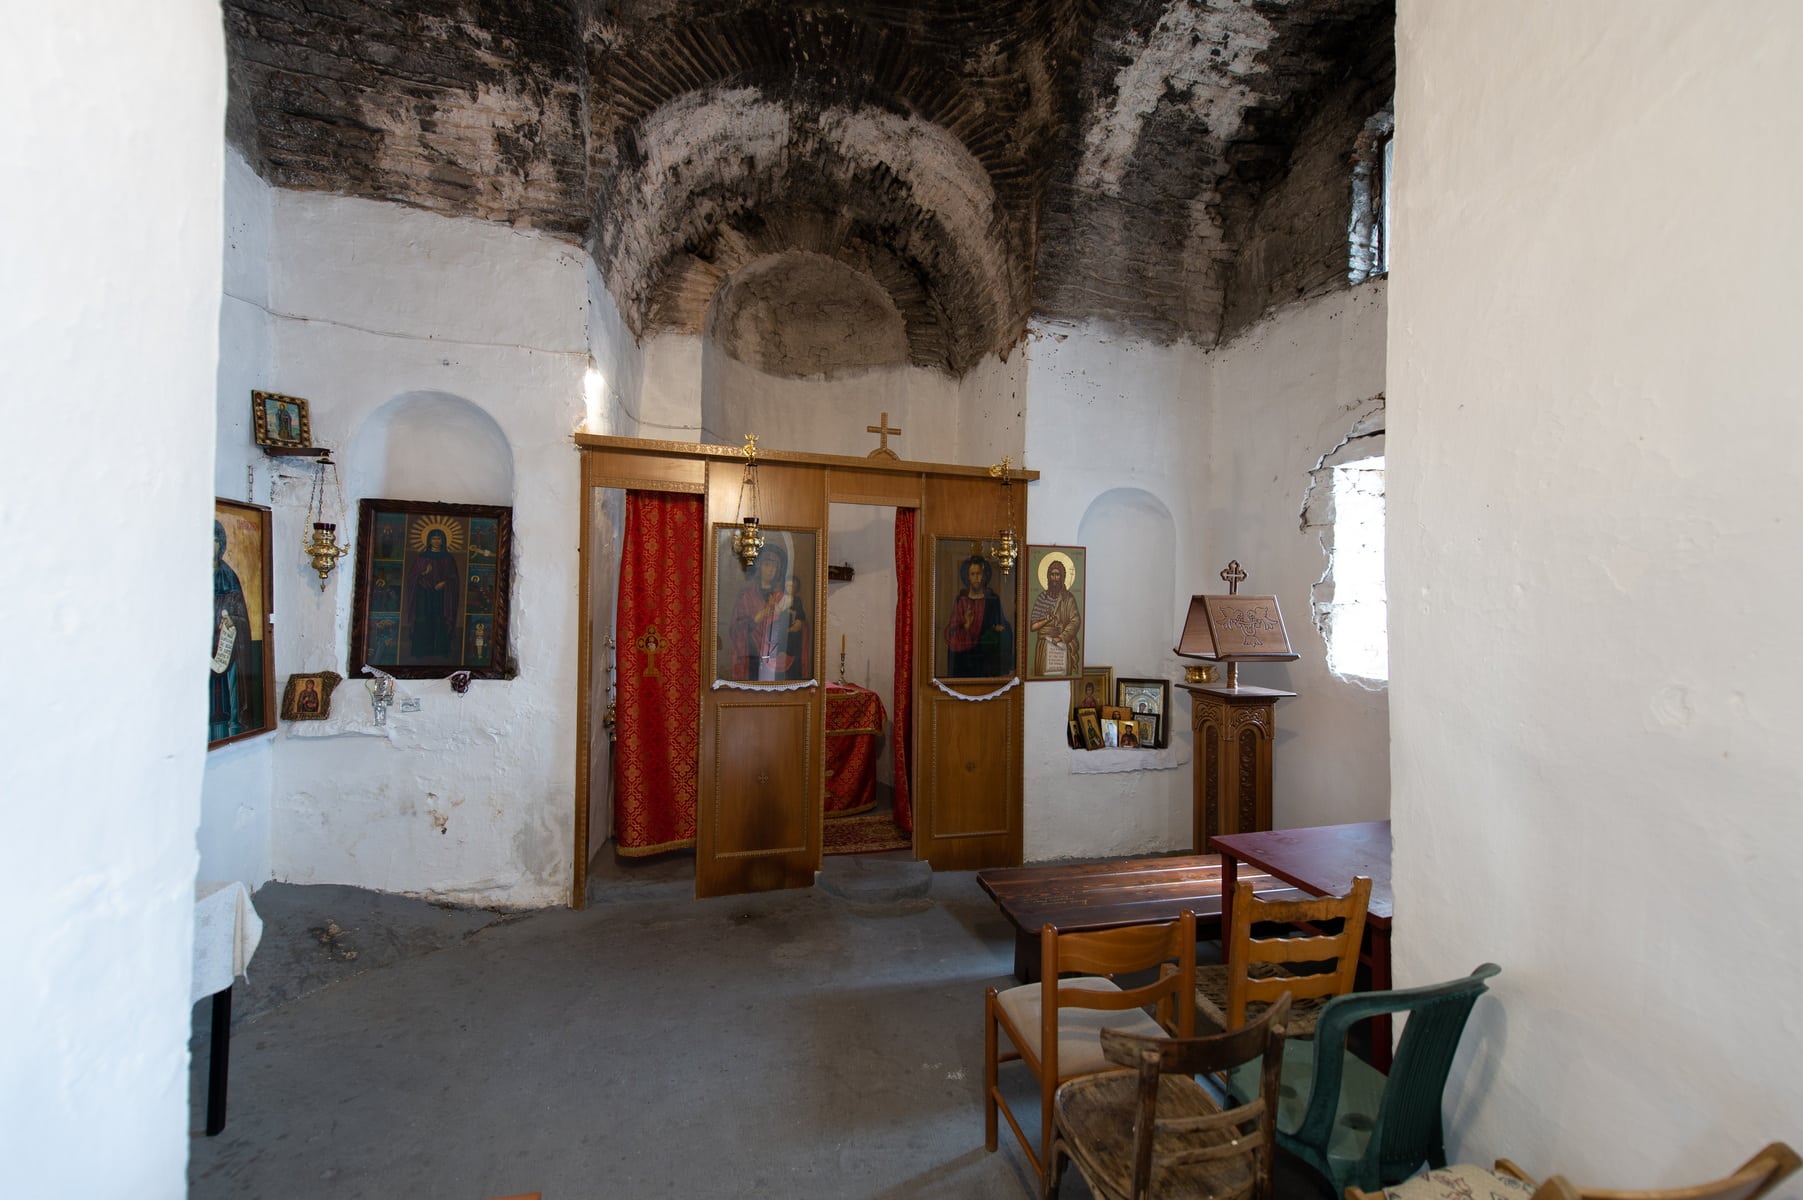 Church of Aghia Paraskevi of “Drakos”